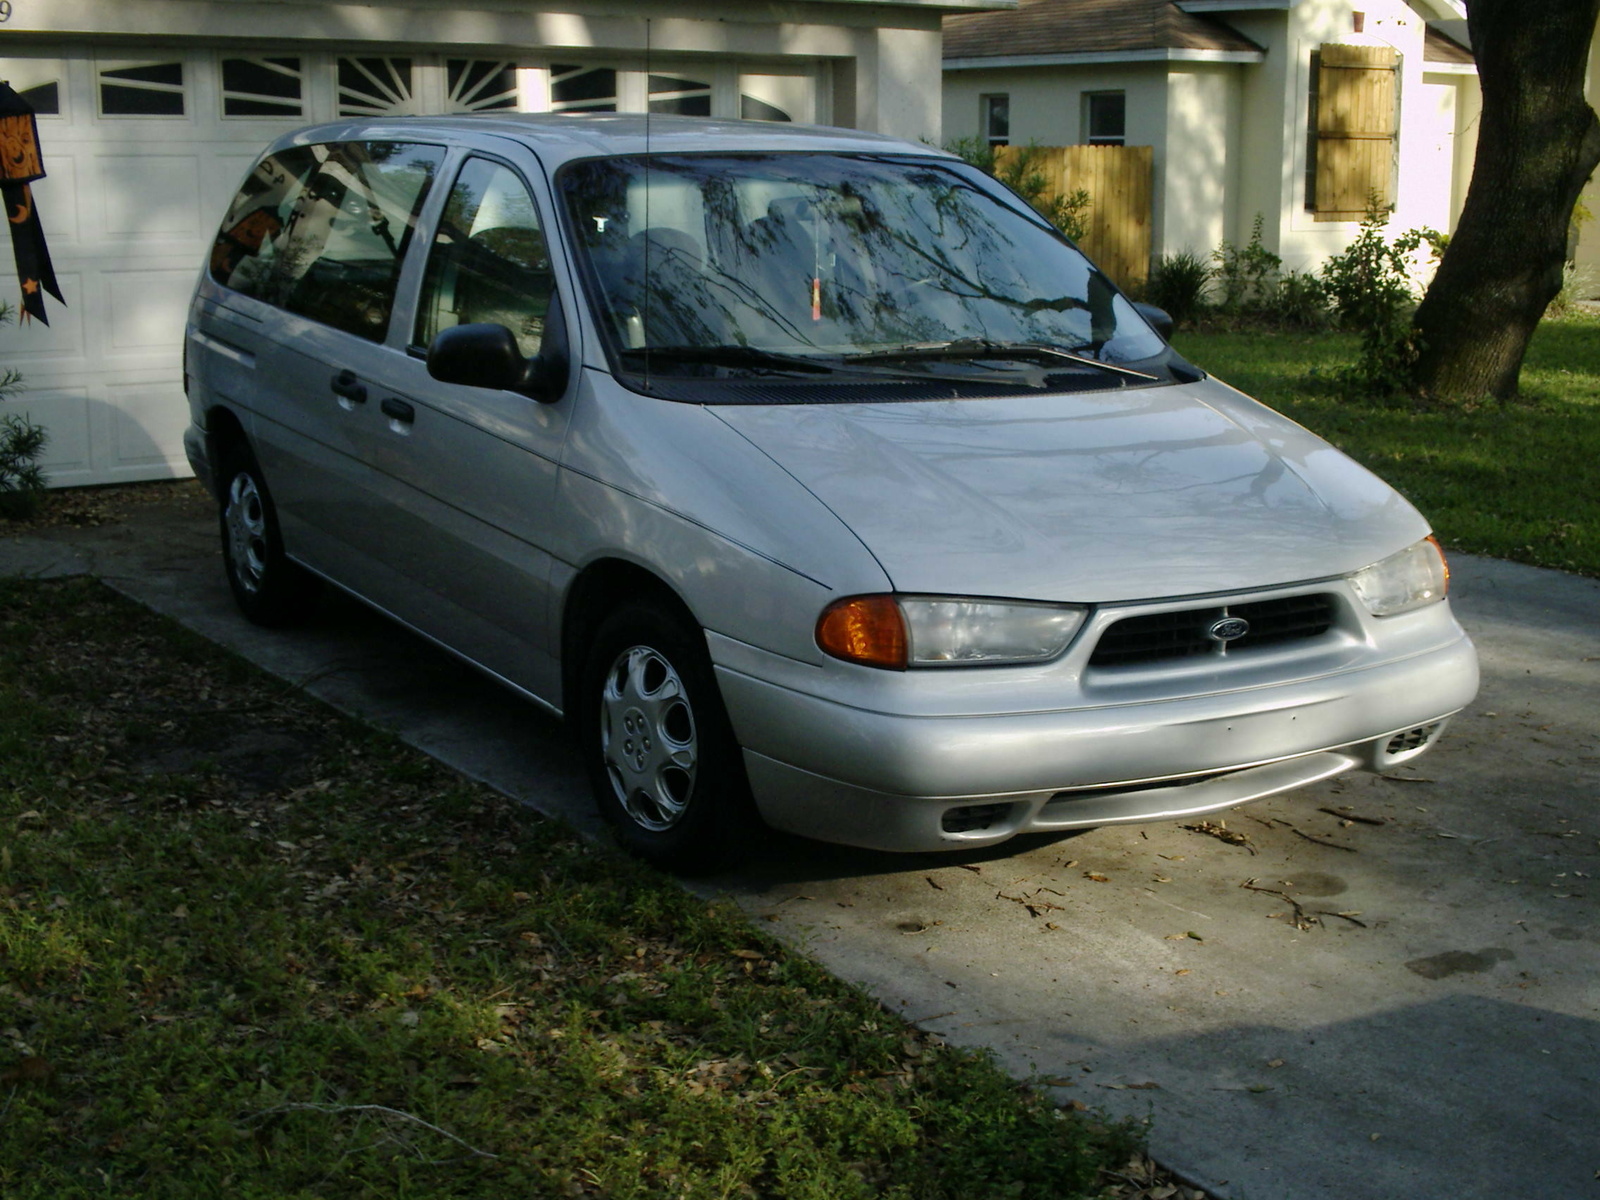 1996 Ford windstar lx minivan #1